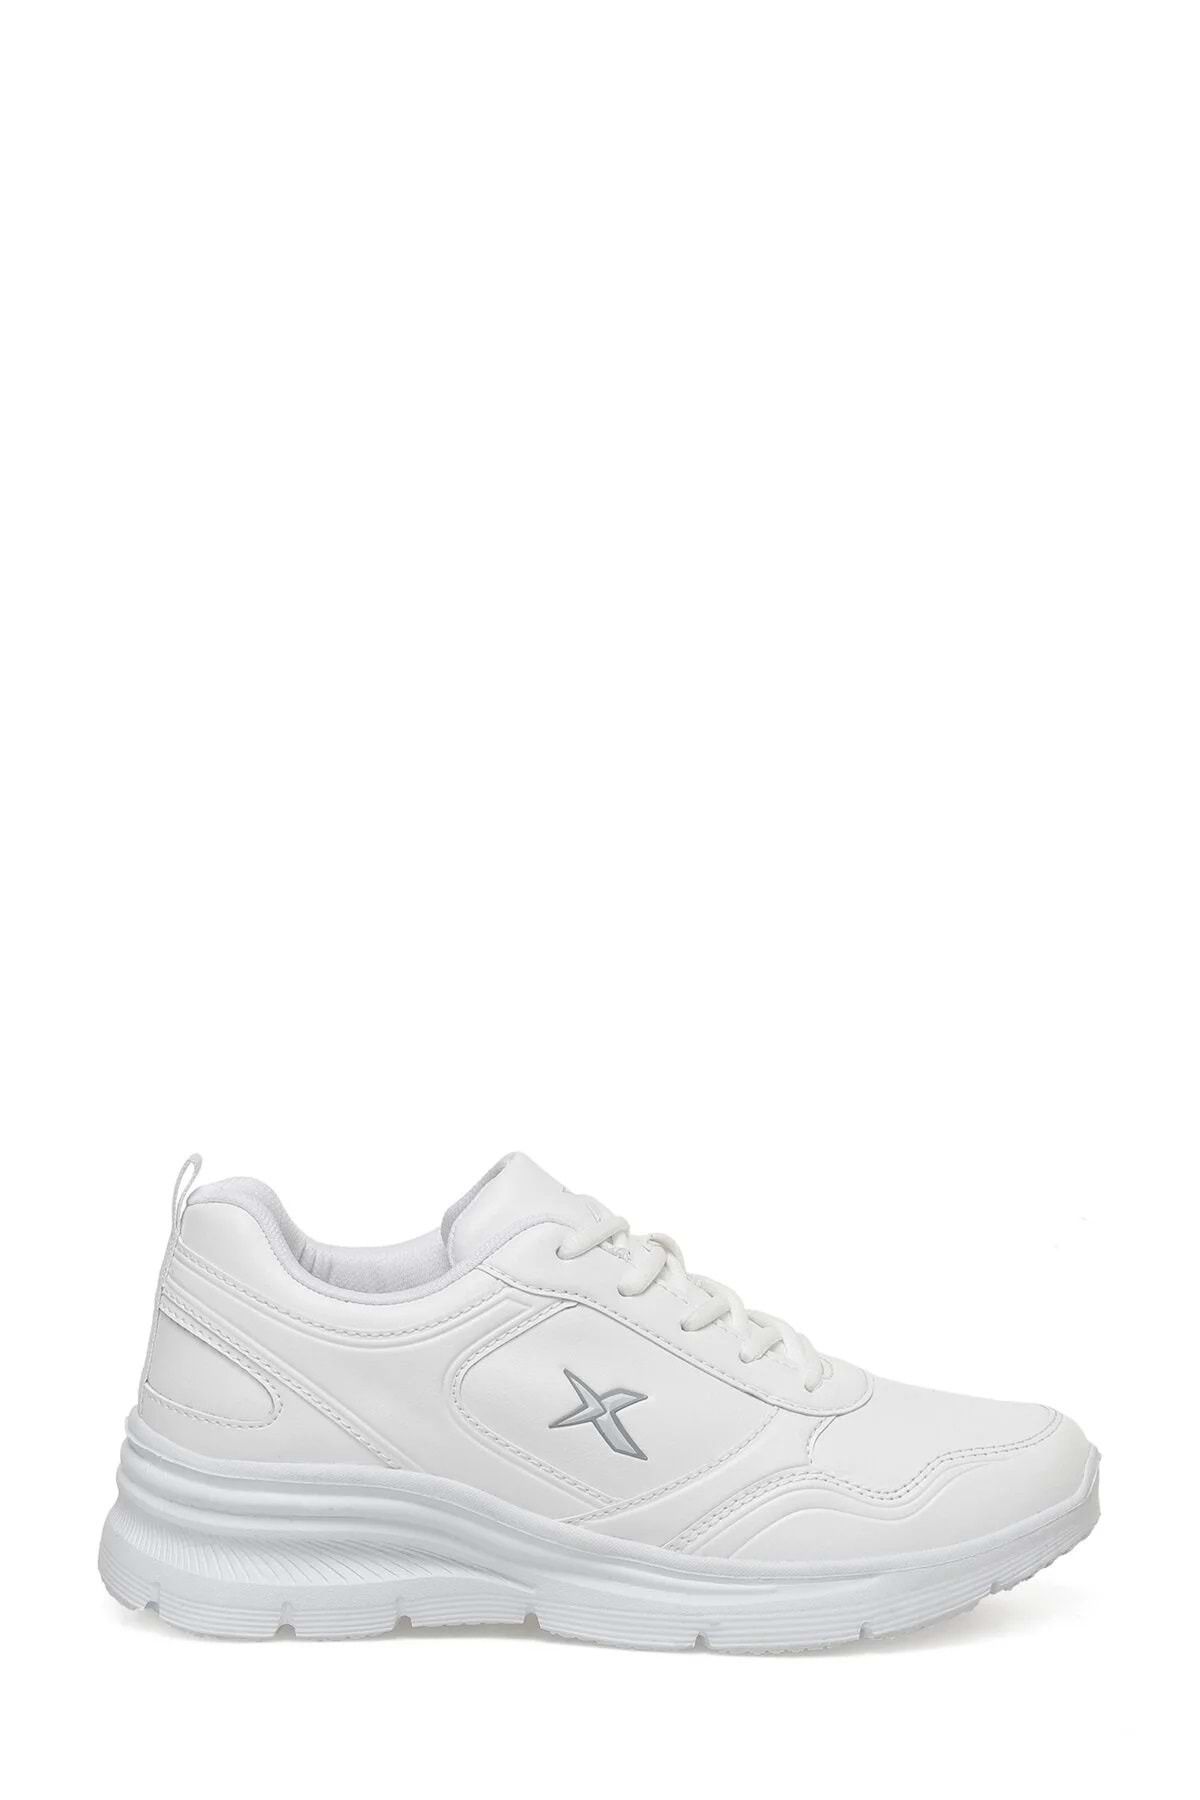 Kinetix Suomy Pu Beyaz Kadın Spor ayakkabı Ckr00784 - 37